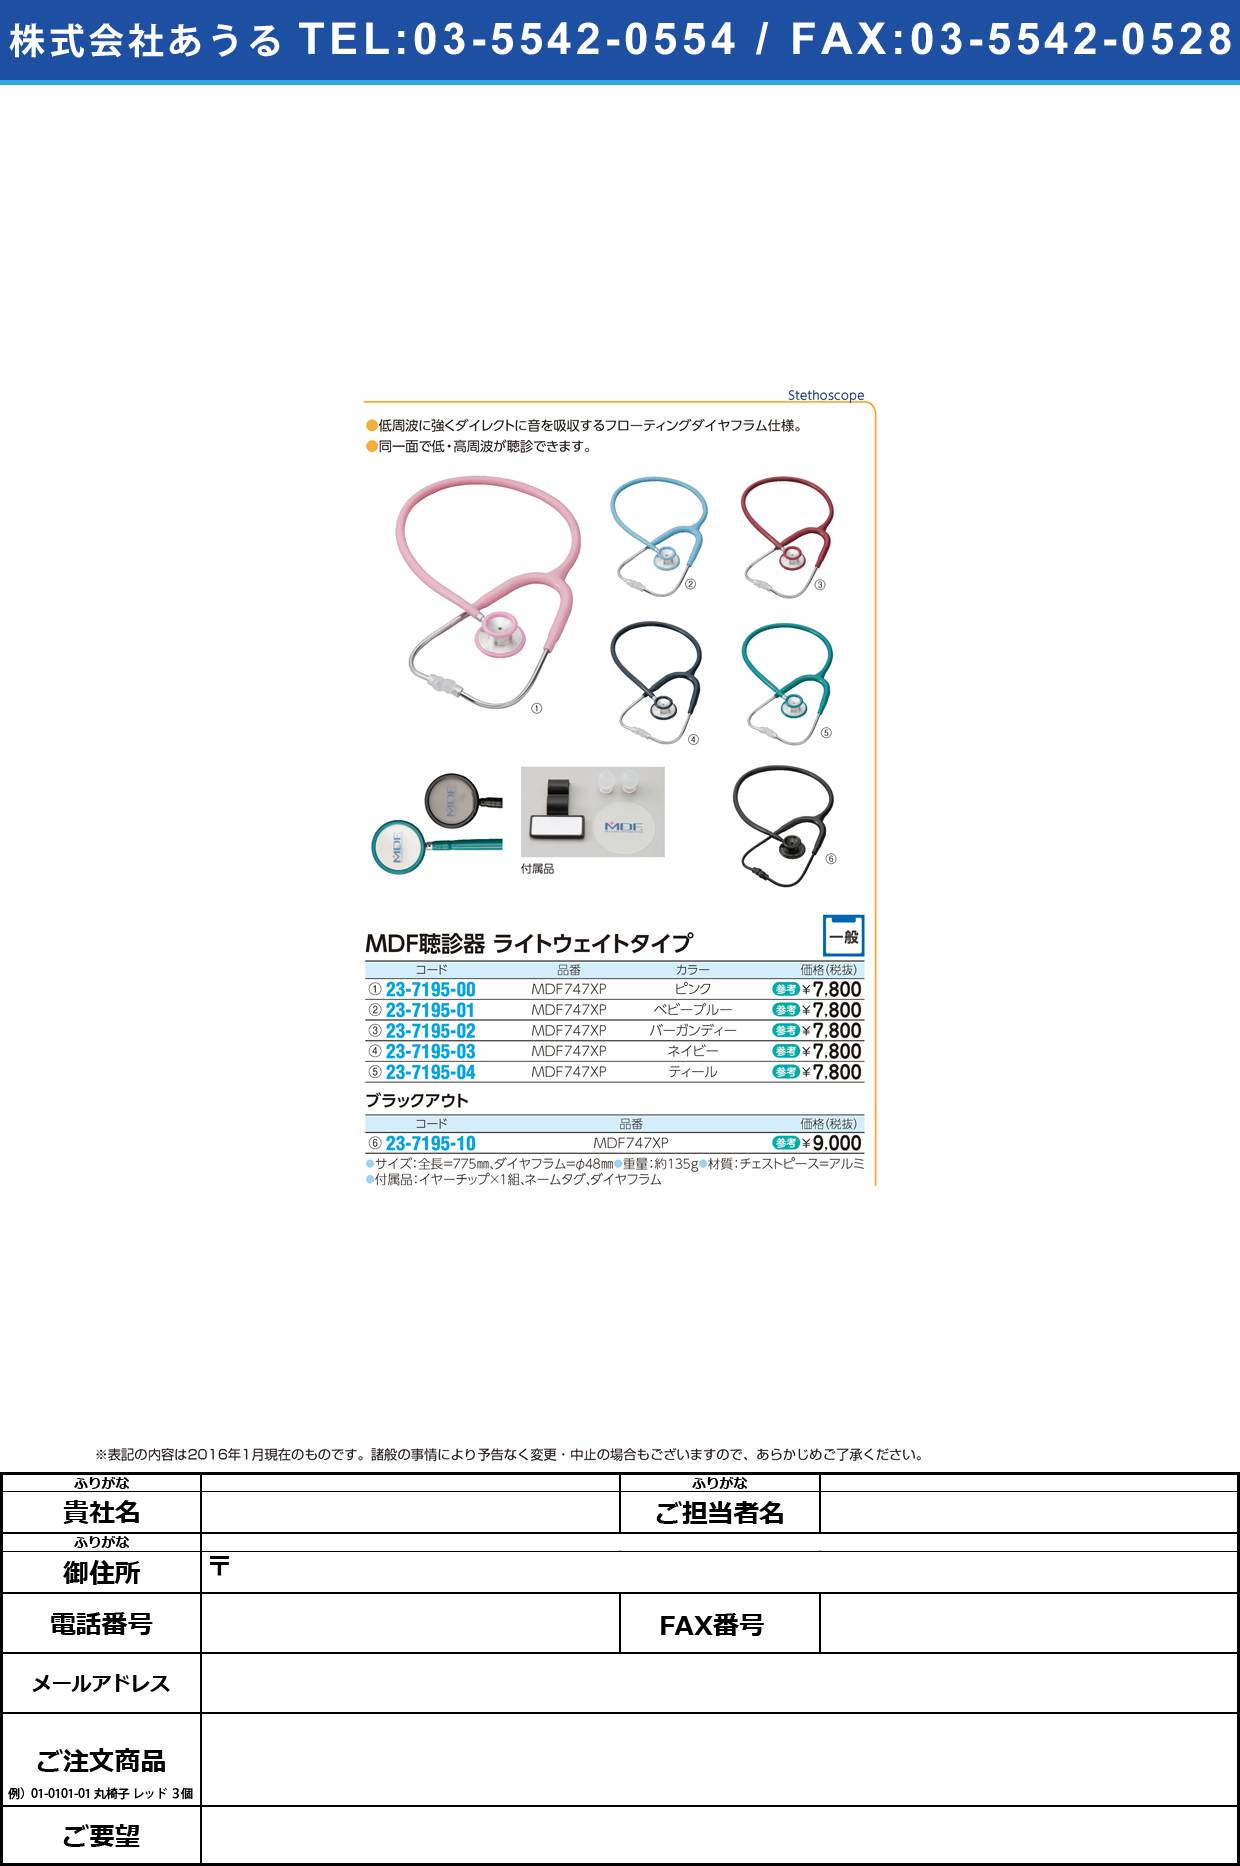 (23-7195-10)ＭＤＦ聴診器ライトウェイトタイプ MDFﾁｮｳｼﾝｷﾗｲﾄｳｪｲﾄﾀｲﾌﾟ MDF747XP(ﾌﾞﾗｯｸｱｳﾄ)【1組単位】【2016年カタログ商品】